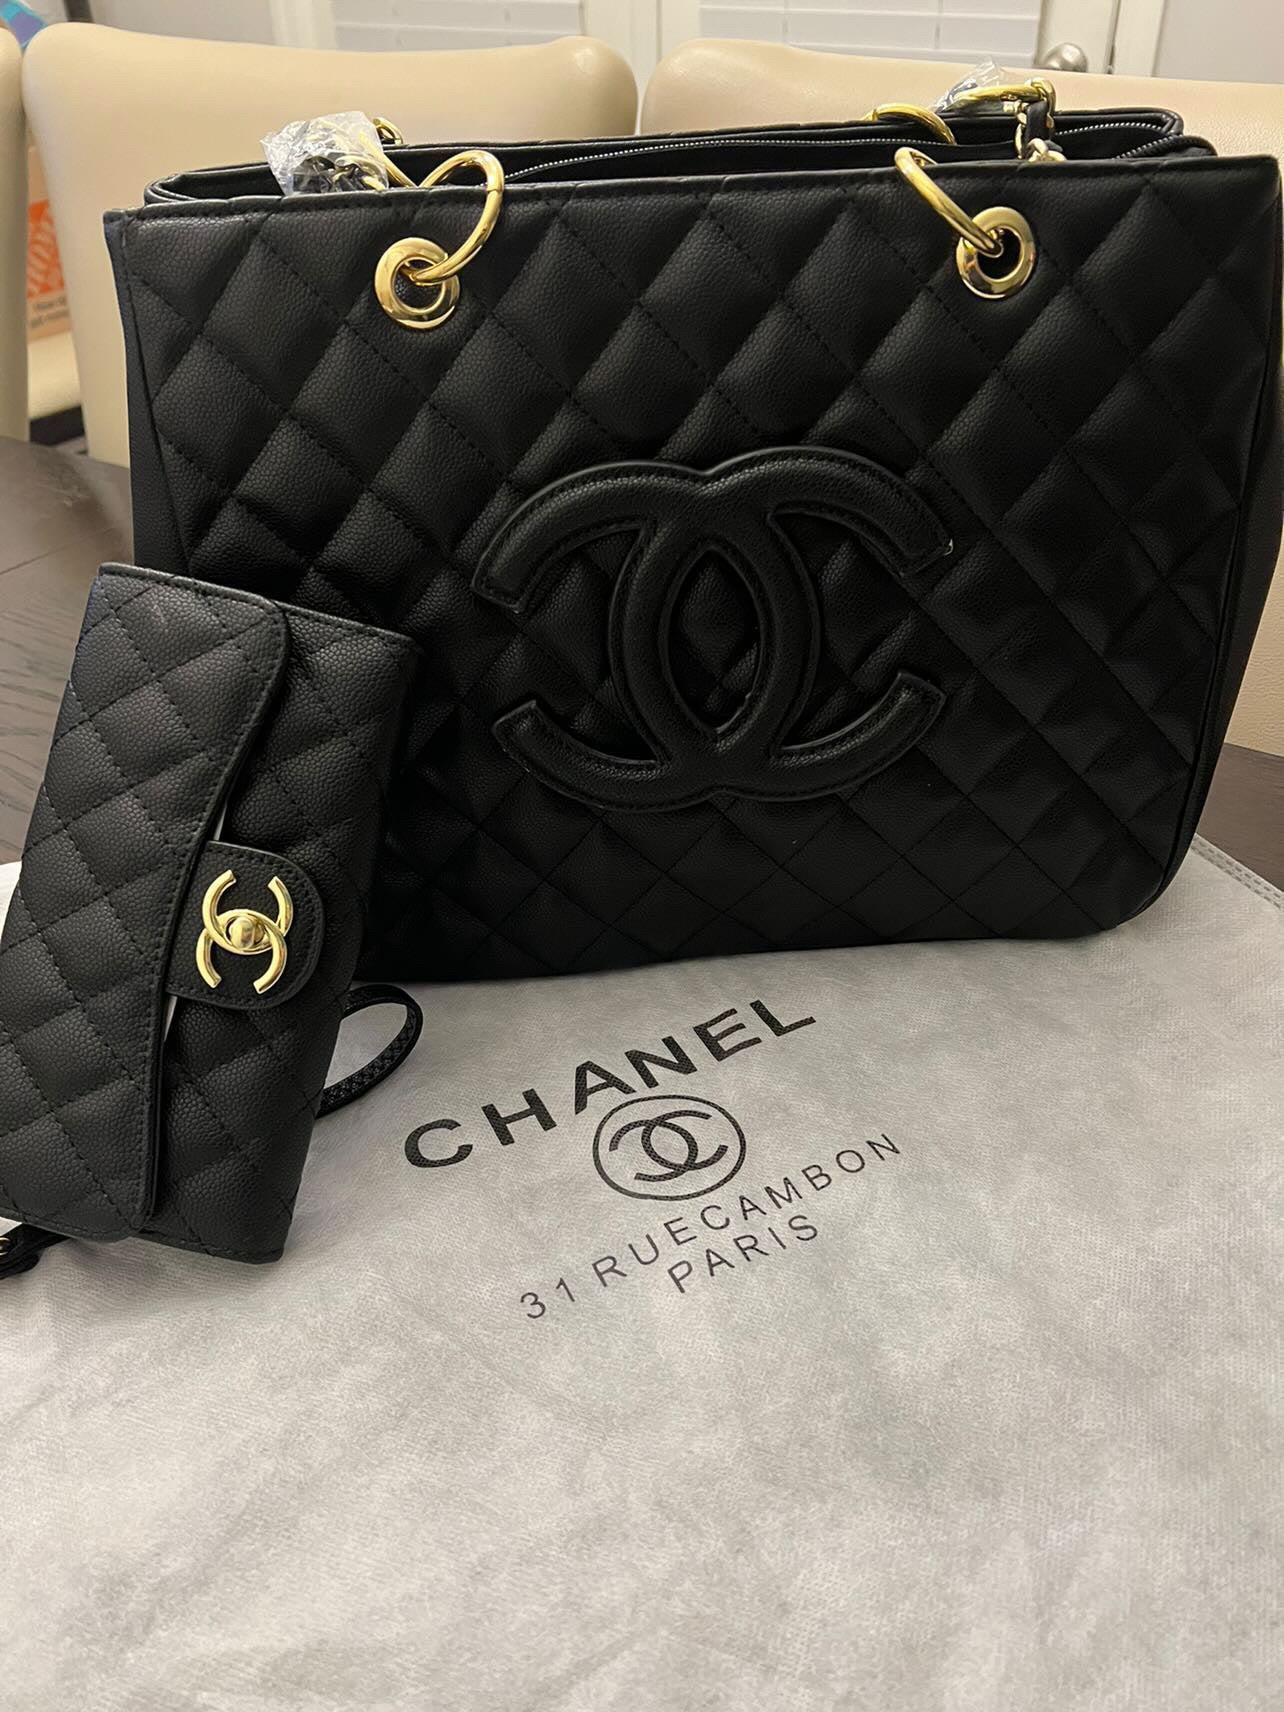 chanel black clutch bag